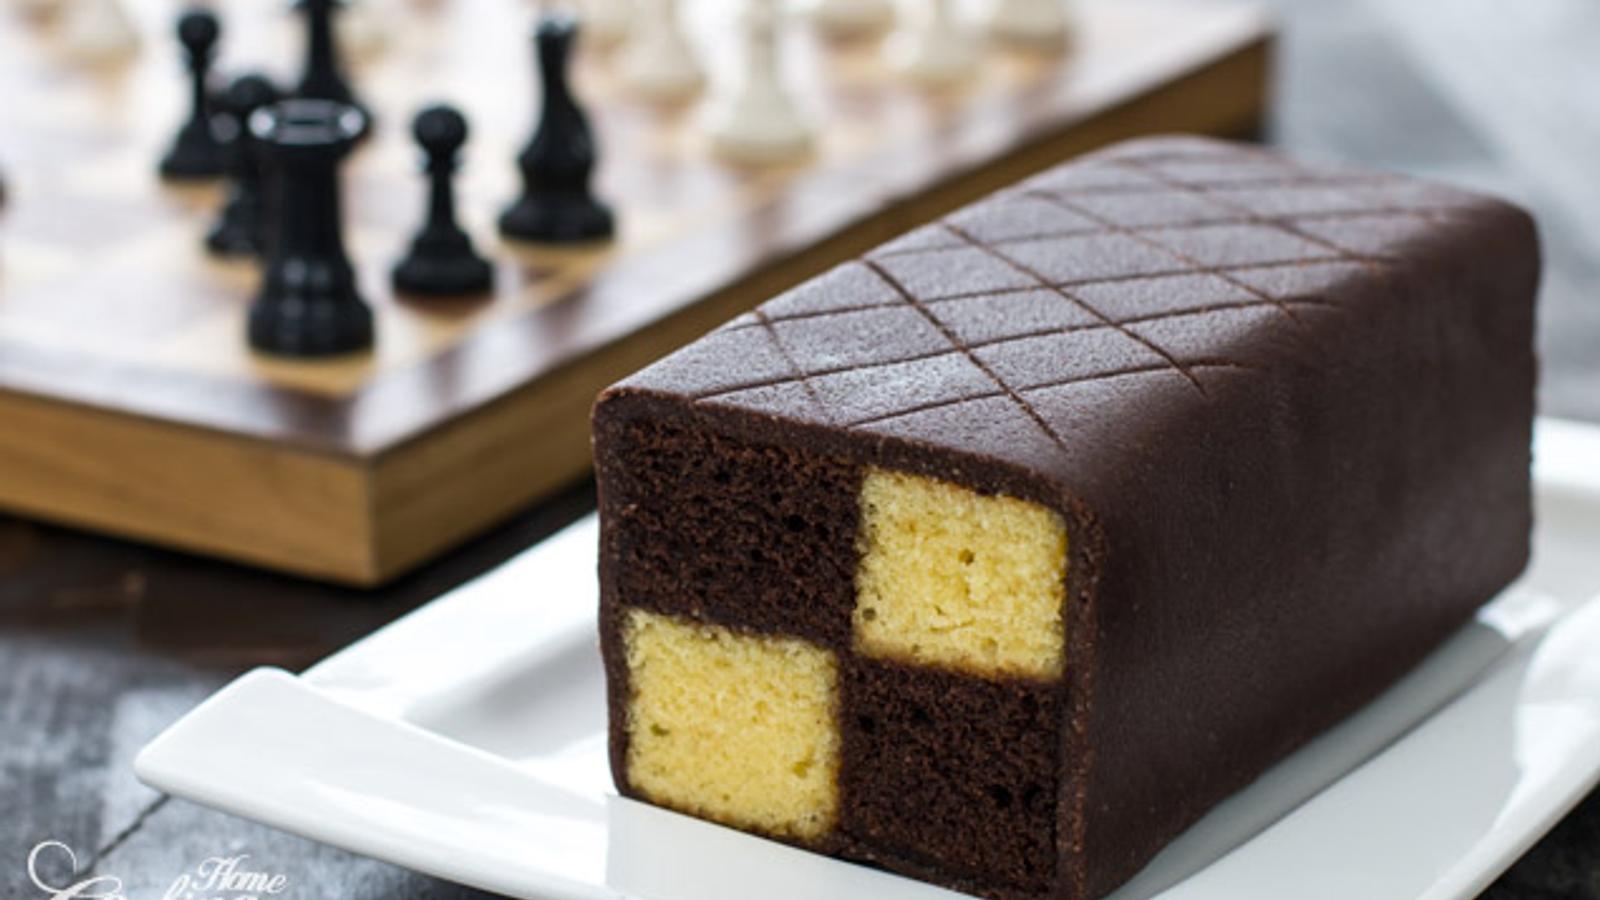 Audacieux gâteau chocolat-amandes, bien mieux qu'un gâteau marbré!